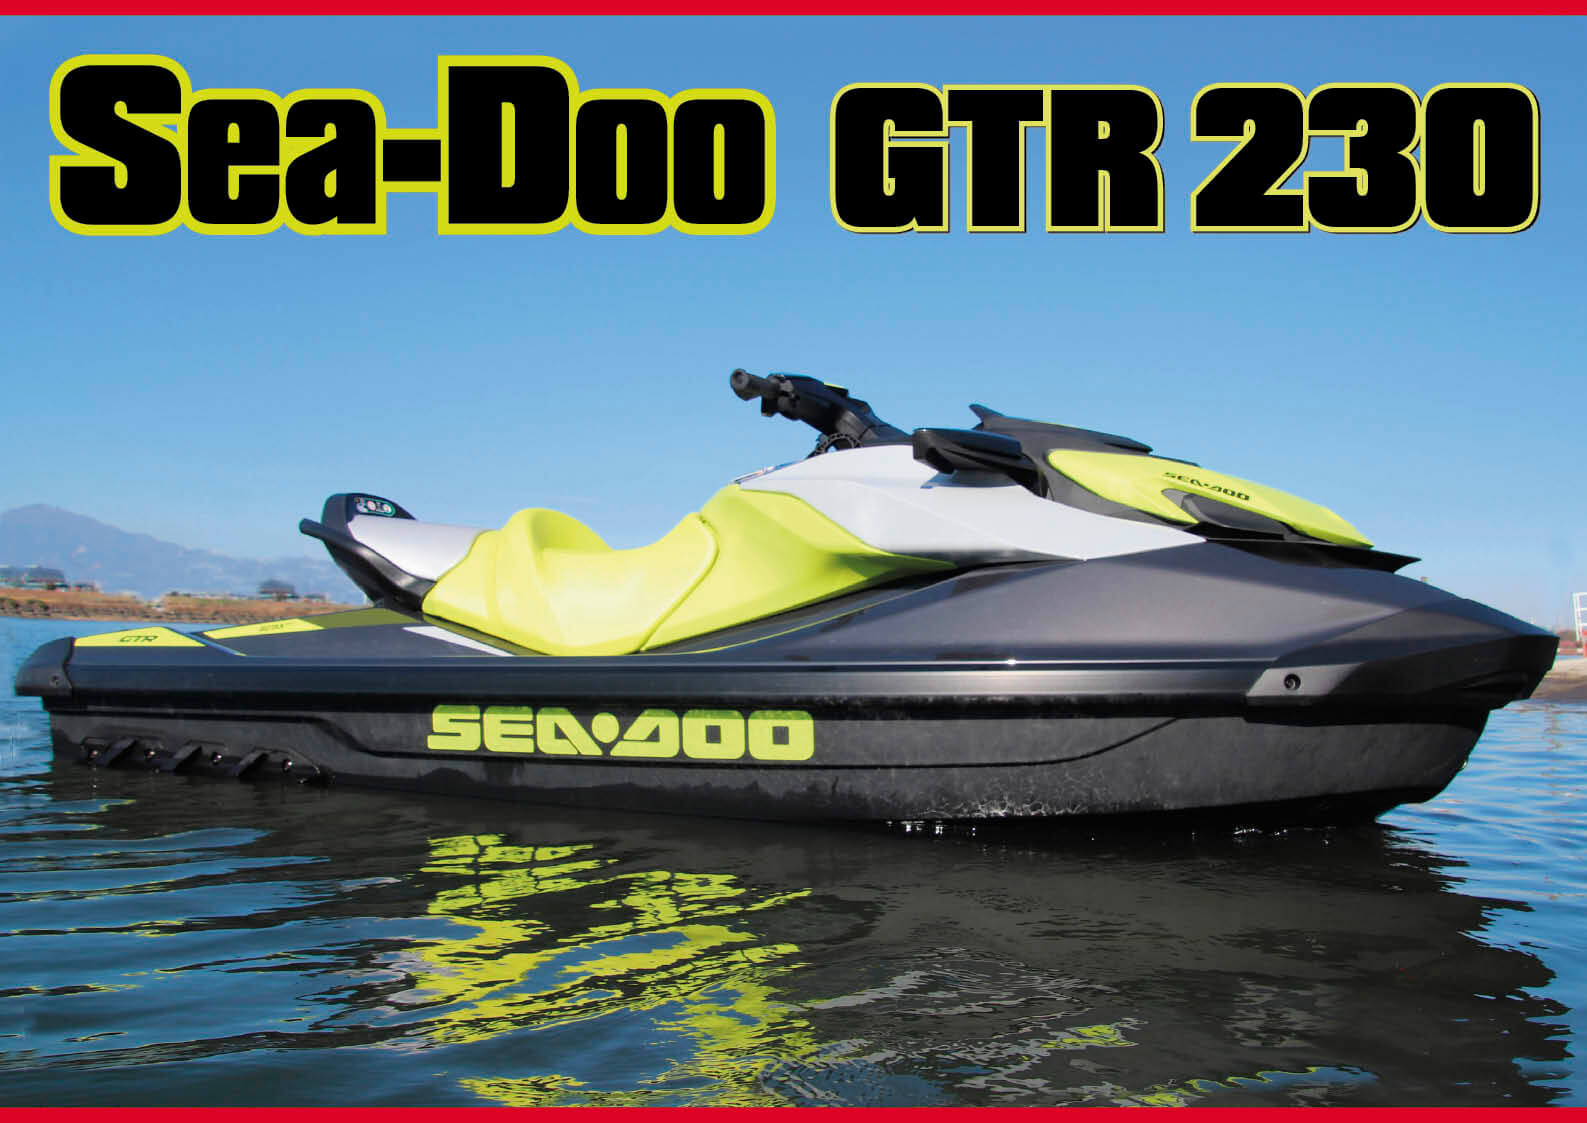 試乗記 Sea Doo シードゥ Gtr 230を再考する 燃費とコスパに優れたスーパーチャージャー搭載モデル ジェットスキー 水上バイク ワールドジェットスポーツマガジン